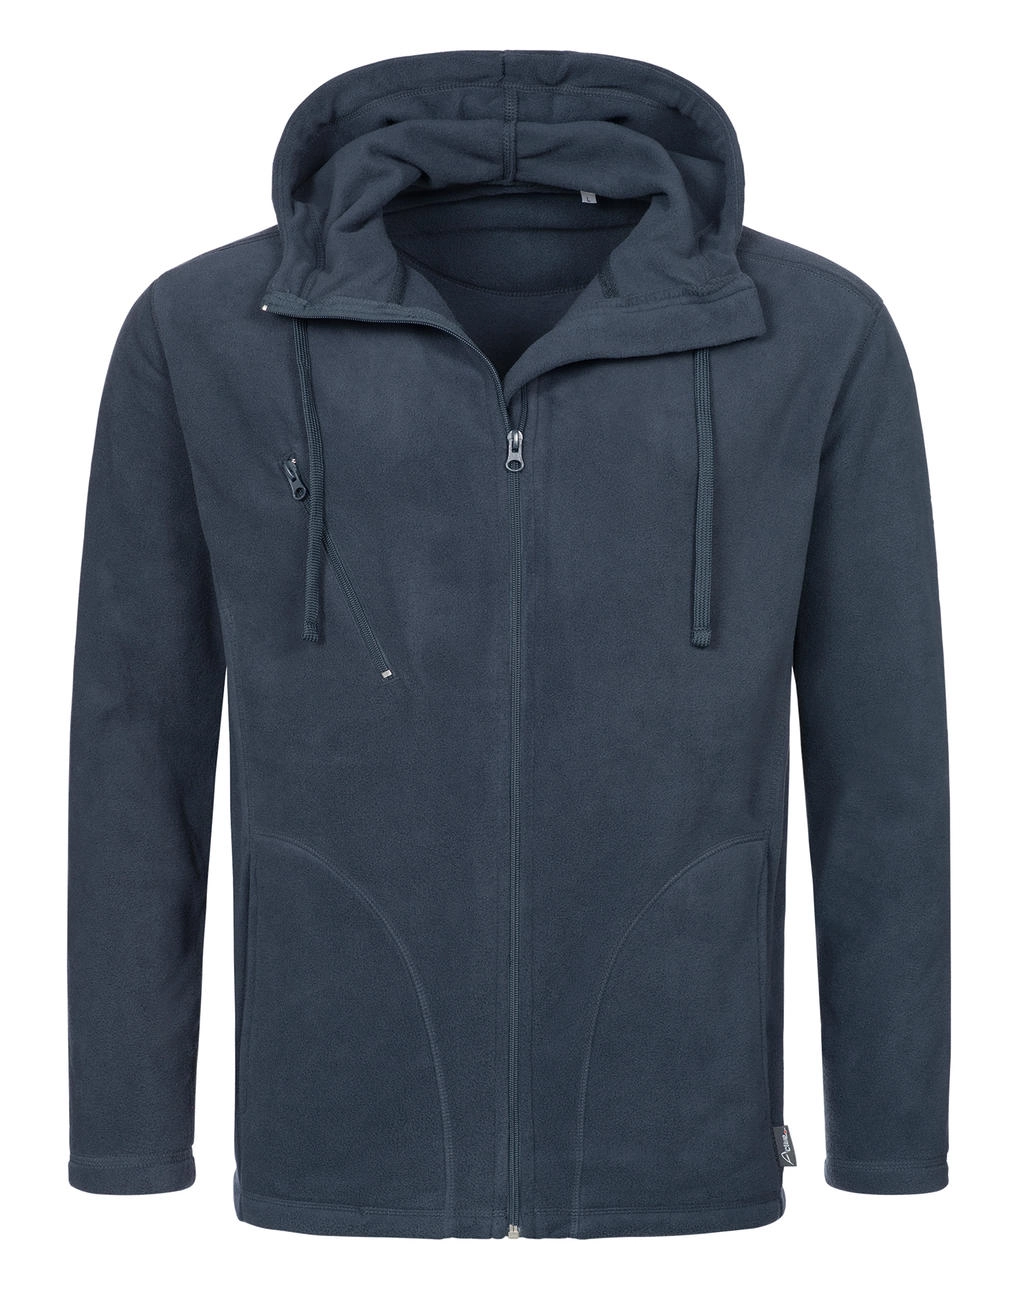 Hooded Fleece Jacket zum Besticken und Bedrucken mit Ihren Logo, Schriftzug oder Motiv.